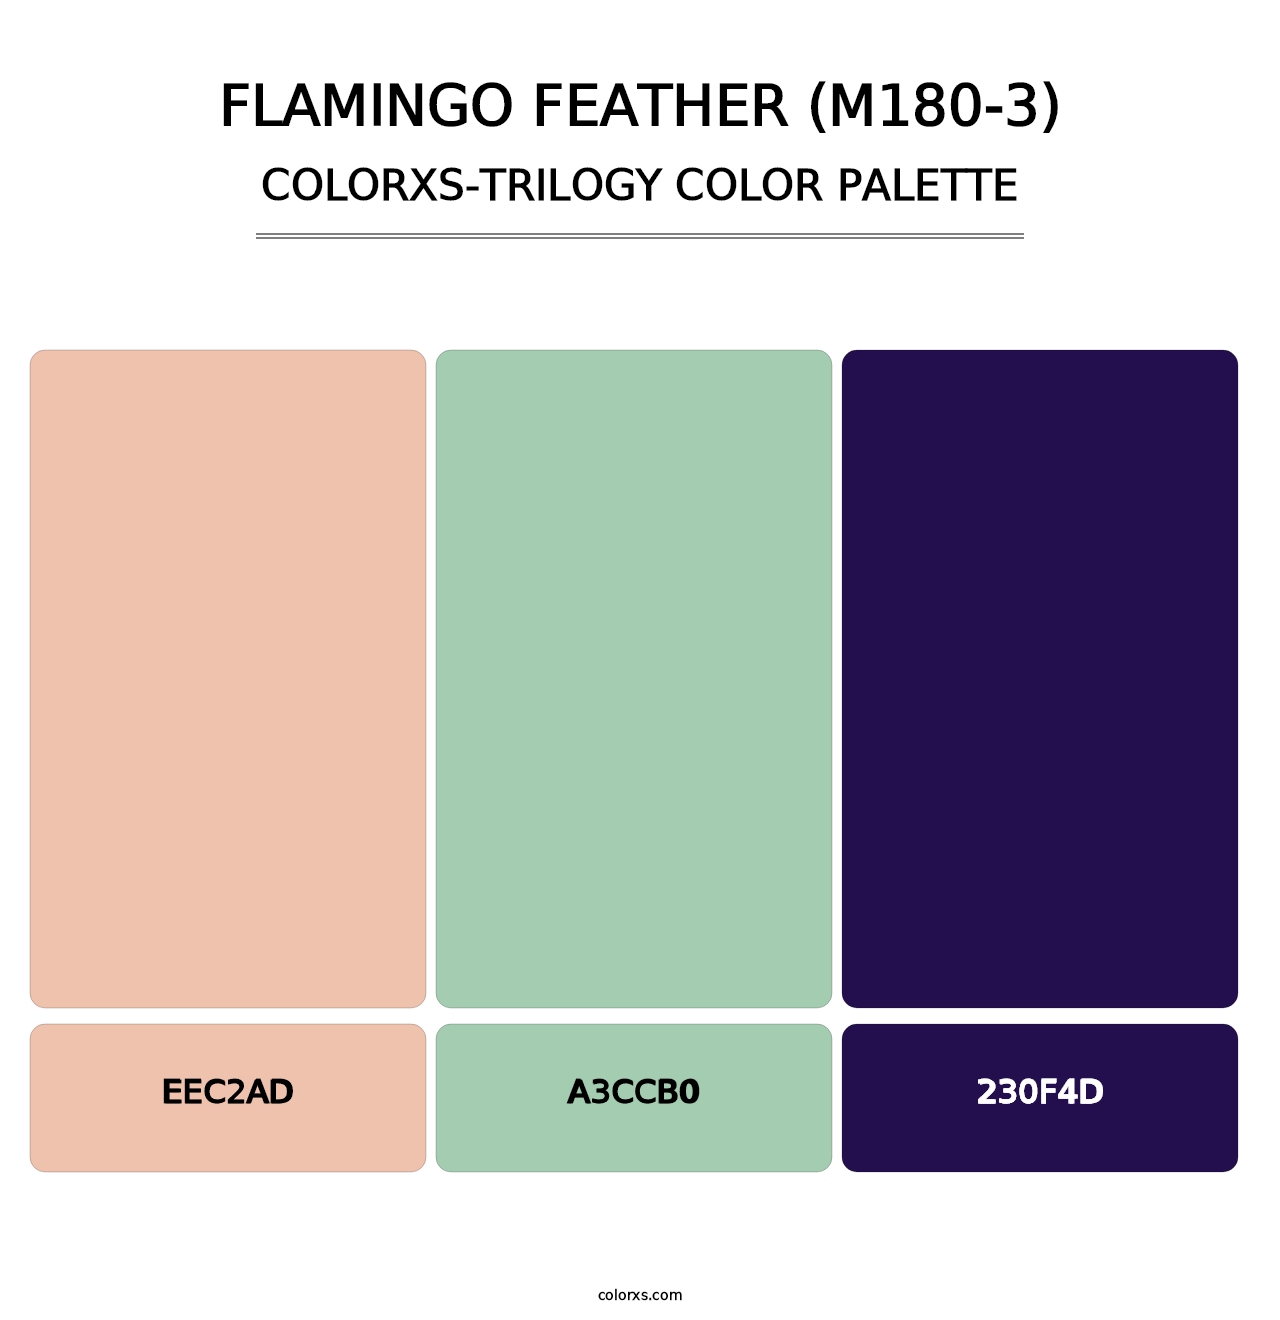 Flamingo Feather (M180-3) - Colorxs Trilogy Palette